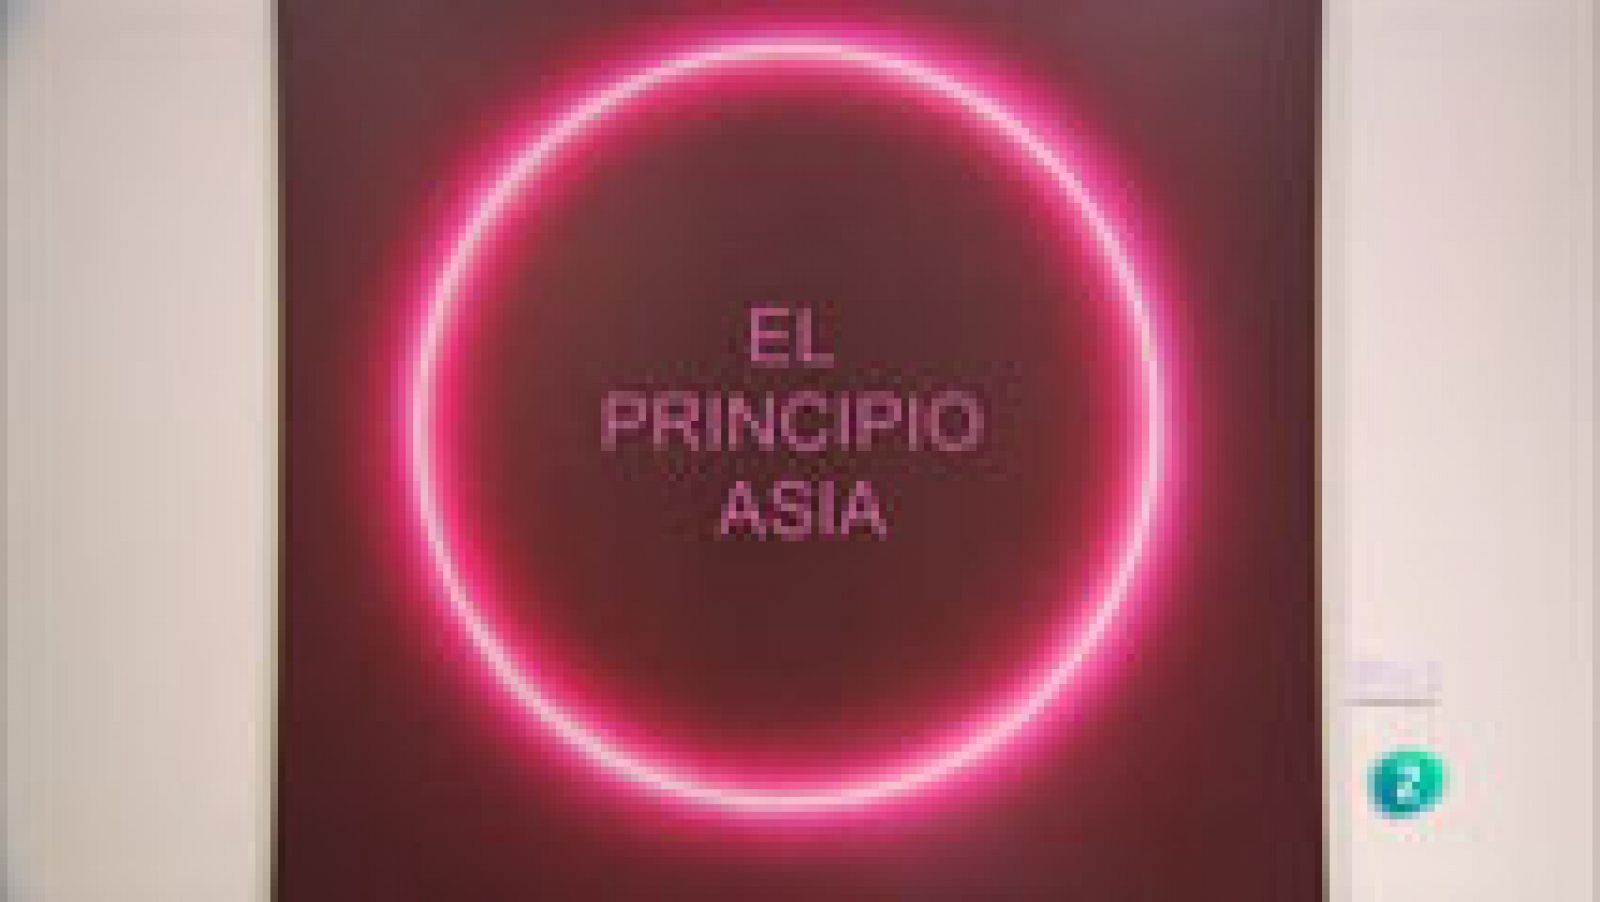 La aventura del saber - 'El principio Asia'. Exposición en la Fundación Juan March